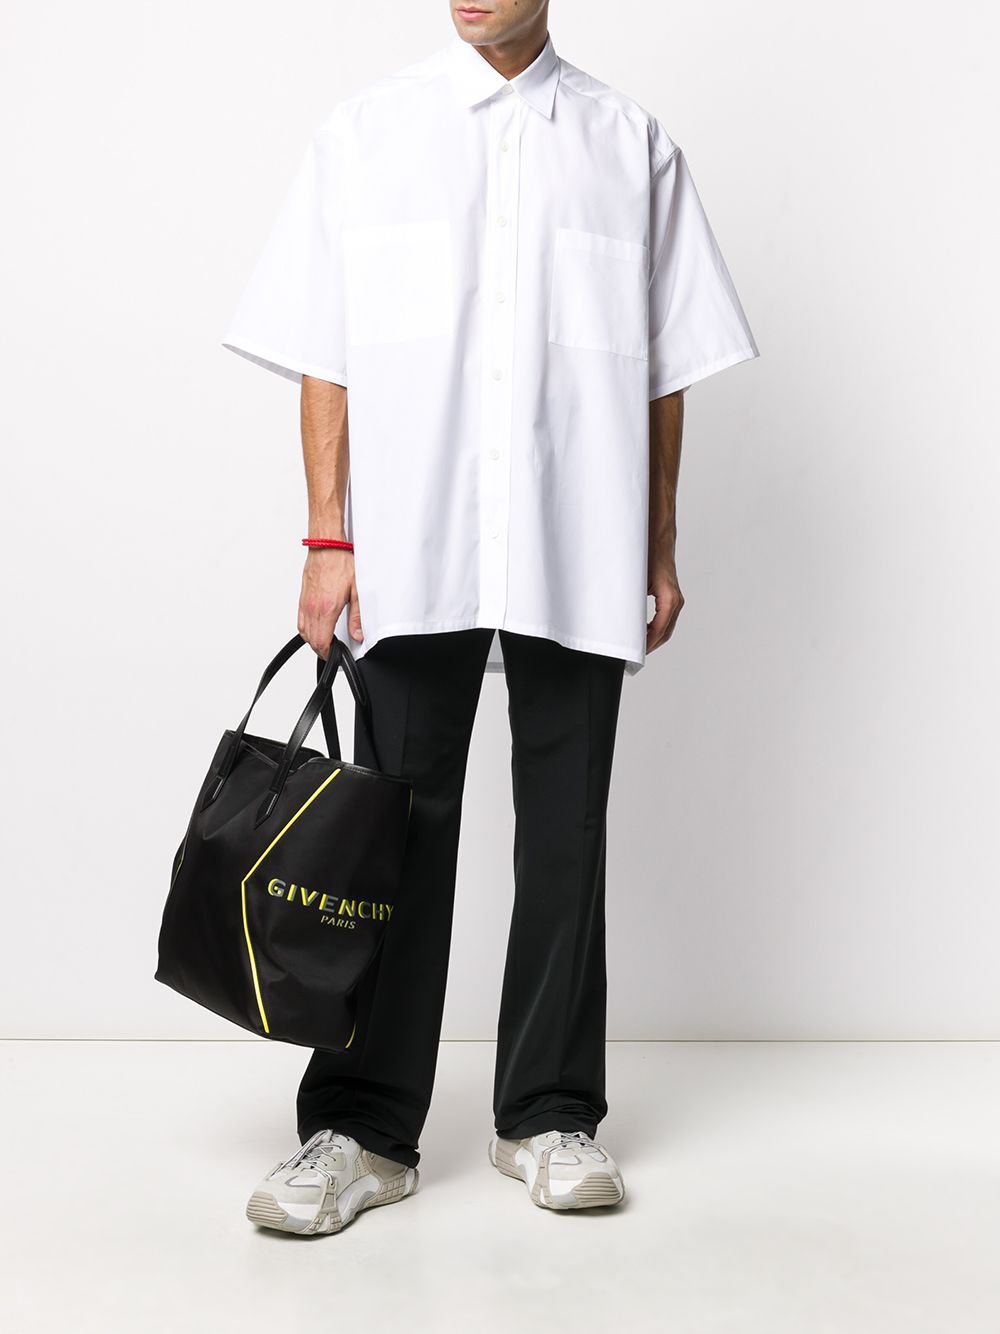 фото Givenchy сумка-тоут bond с логотипом